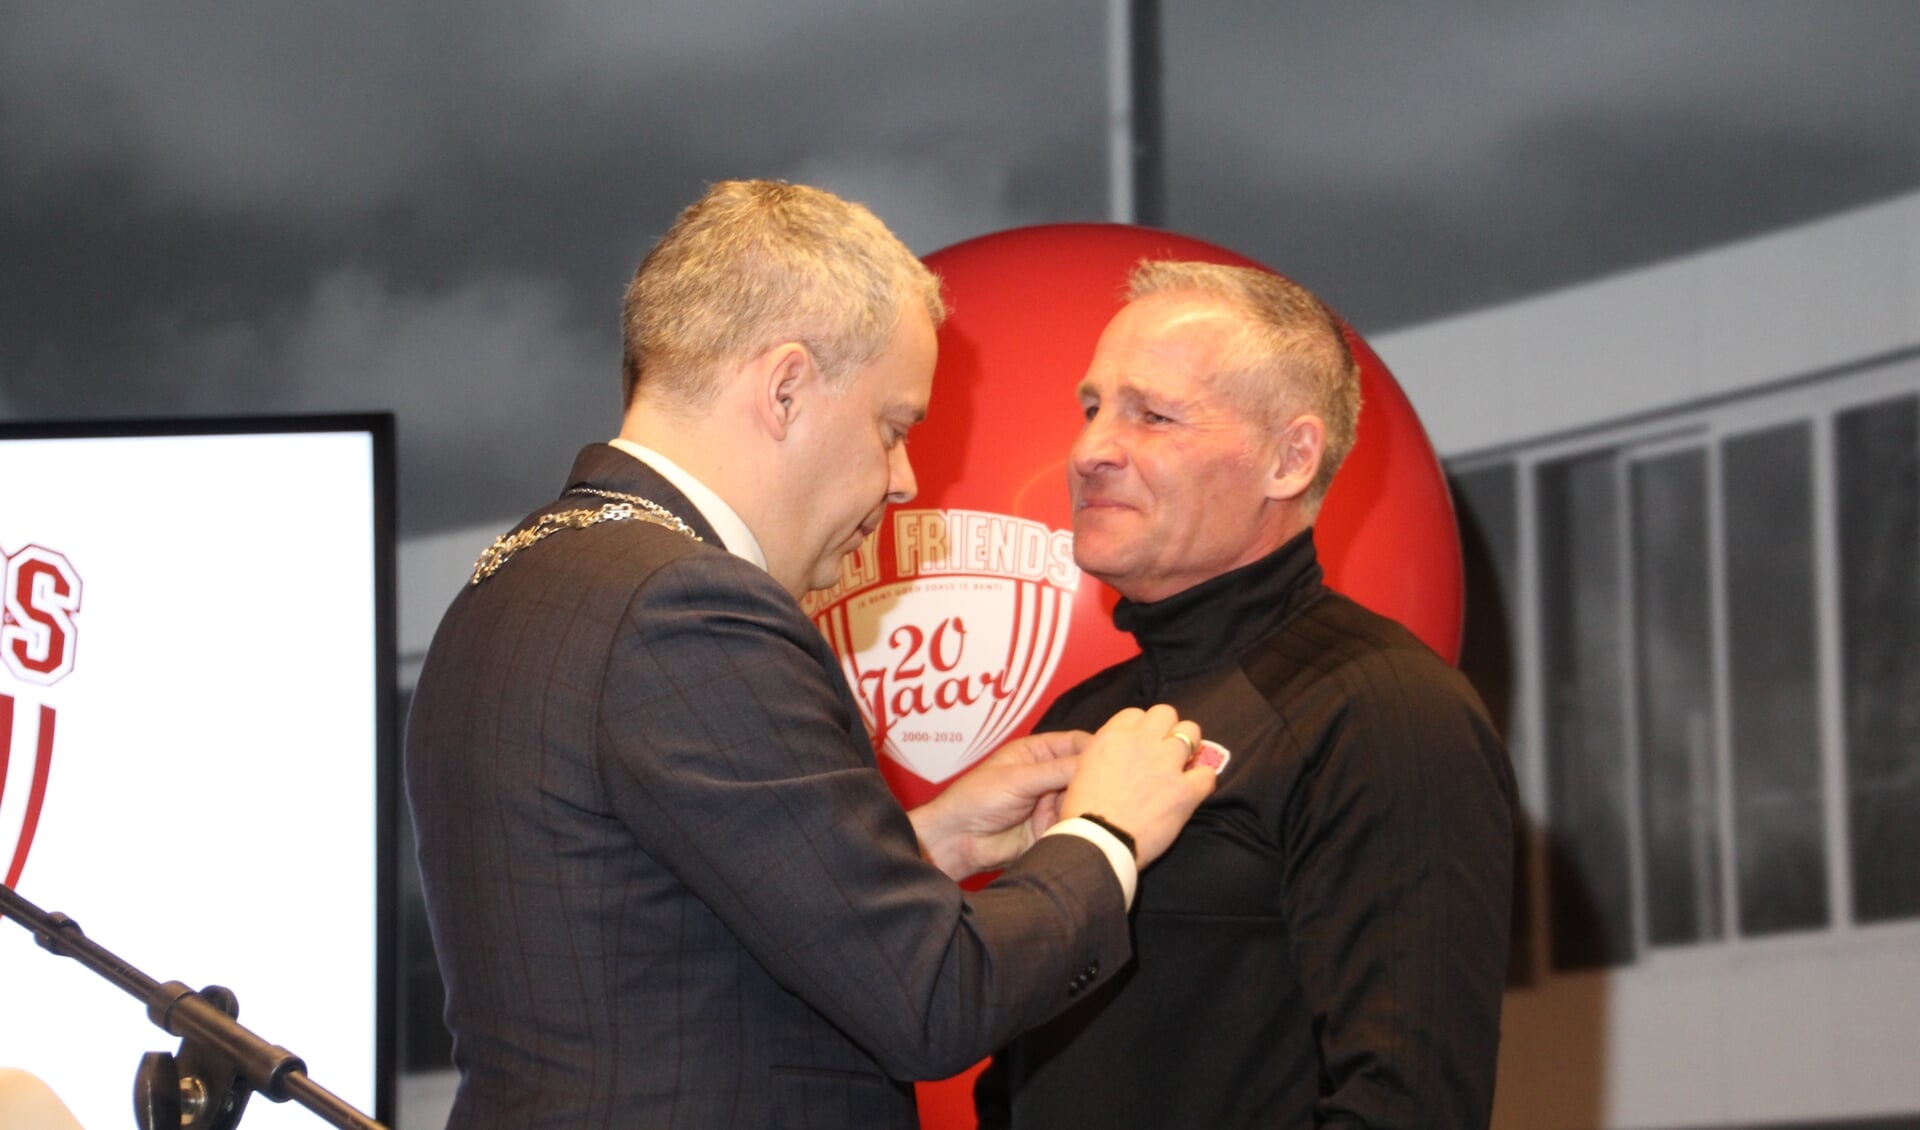 Dennis gebbink krijgt zijn onderscheiding opgespeld door de waarnemend burgemeester van Landsmeer, Dennis Straat.